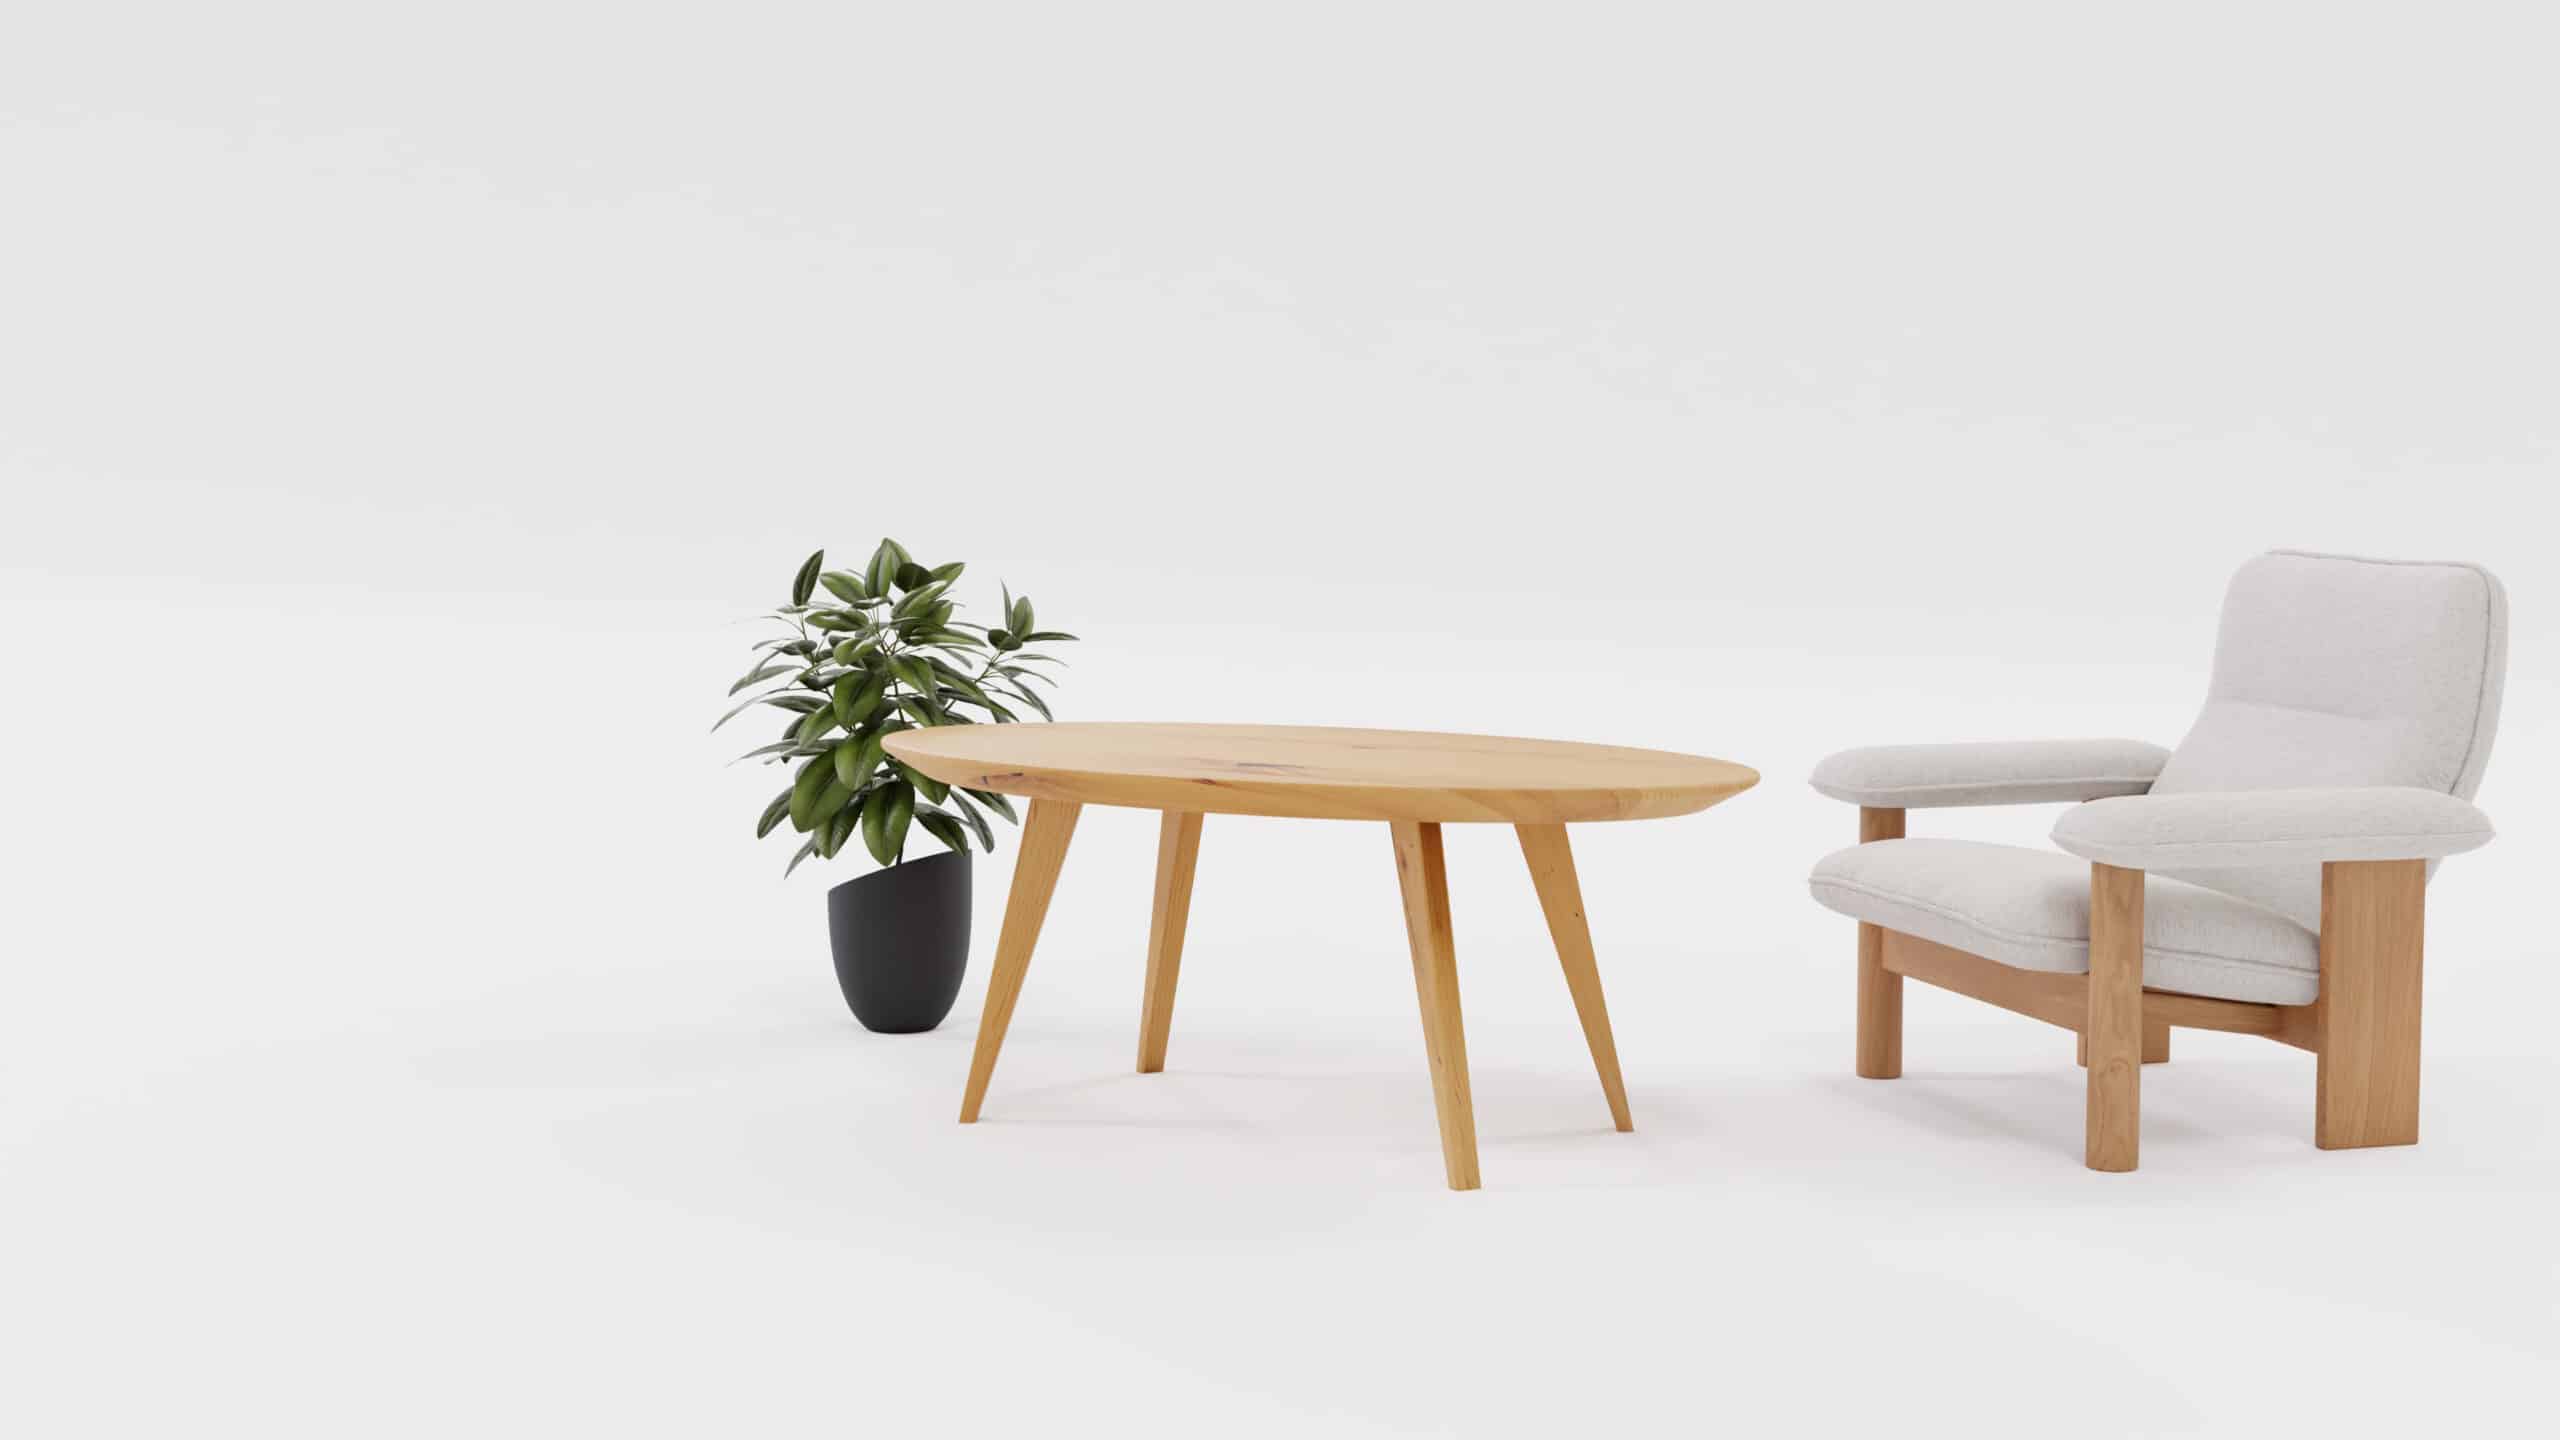 Owalny stół drewniany Elips, obok kwiat i krzesło